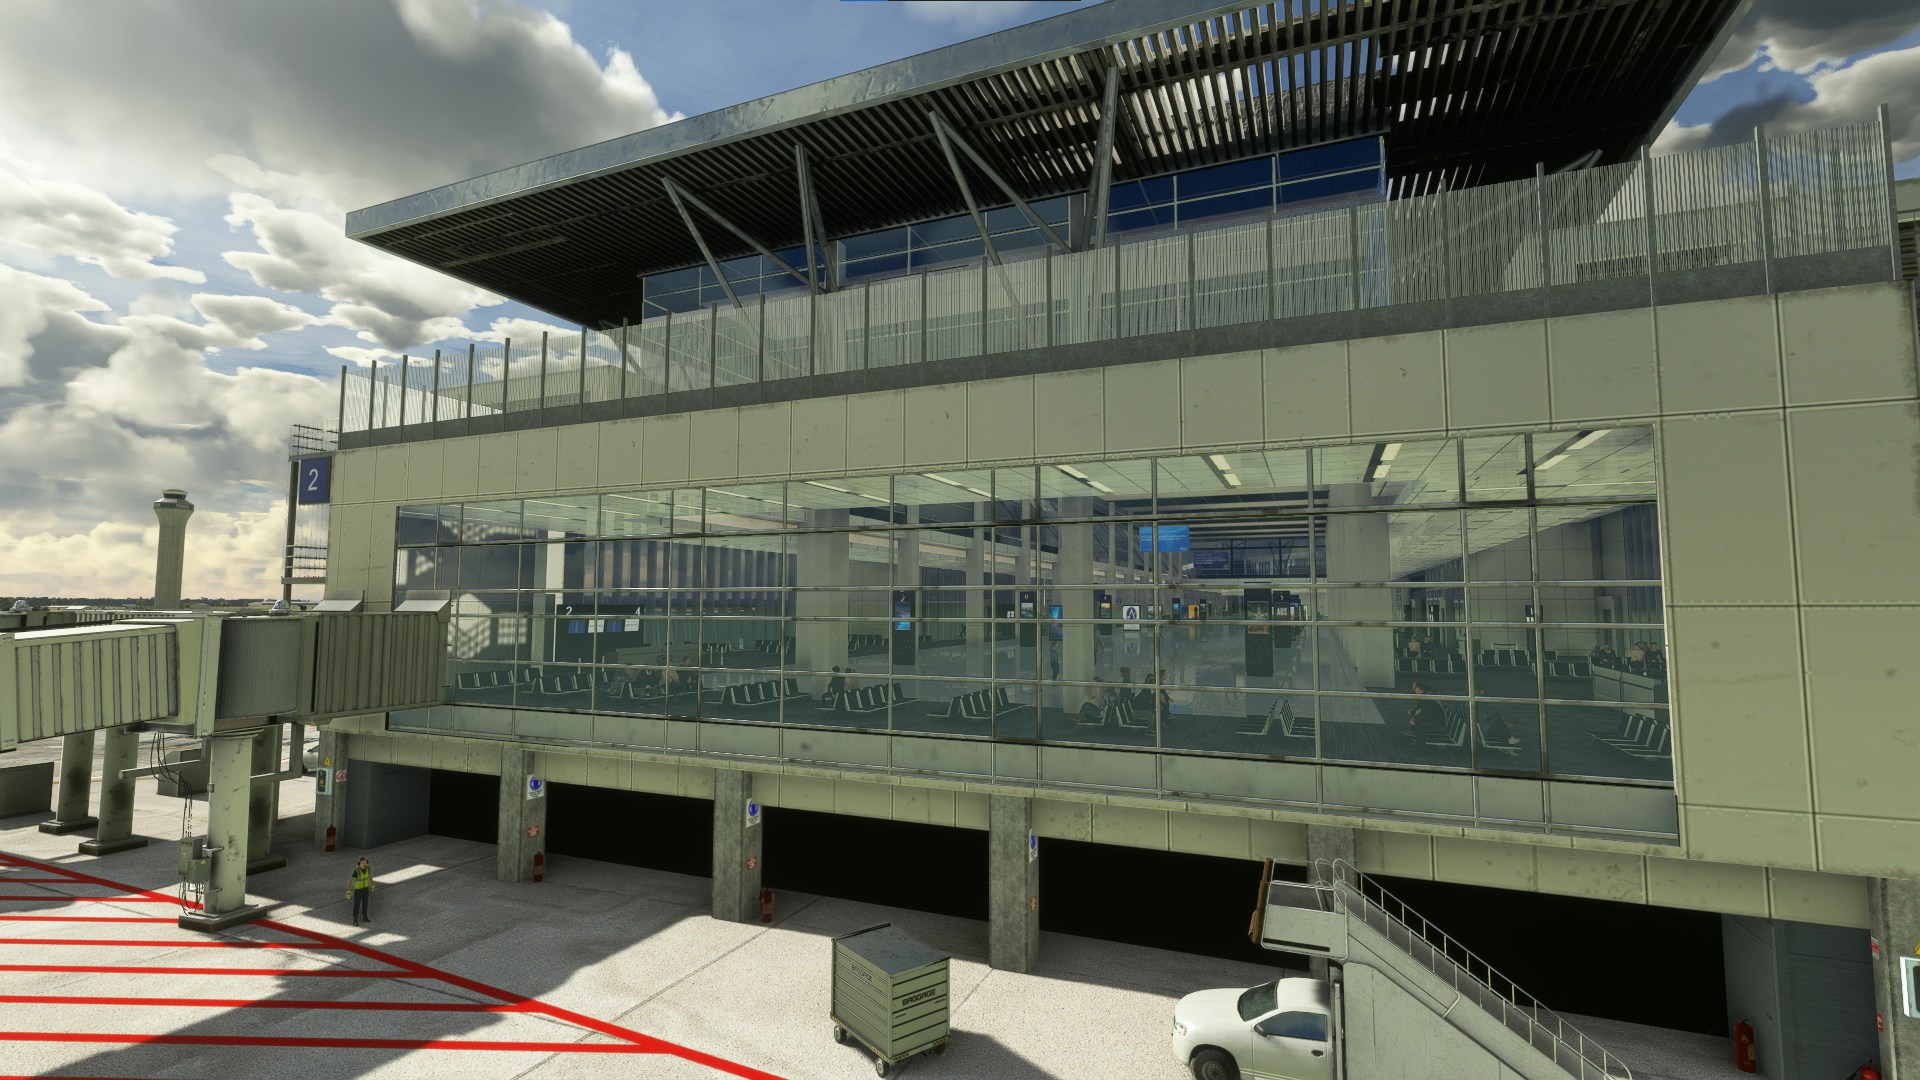 DominicDesignTeam Releases Austin-Bergstrom Intl. Airport